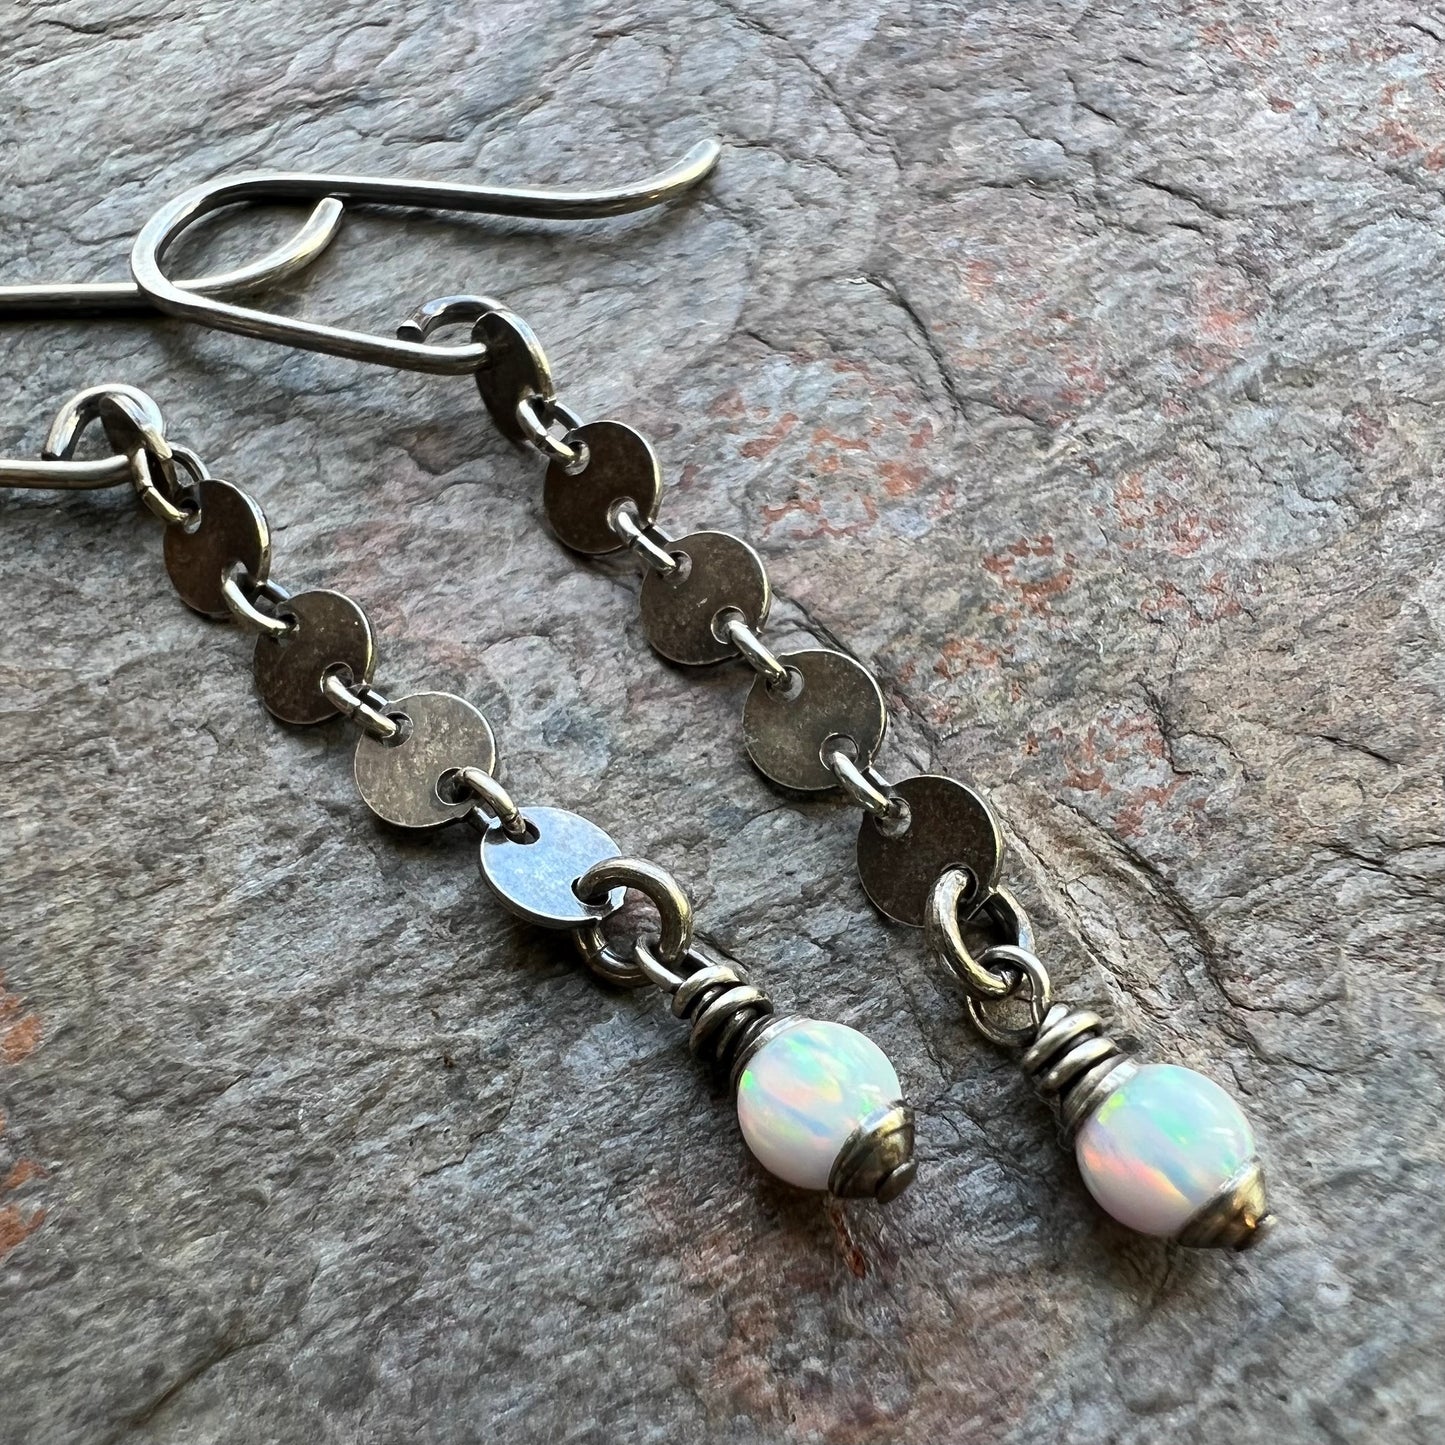 Opal Sterling Silver Earrings - Opal Beads on Sterling Silver Circle Chain Earrings